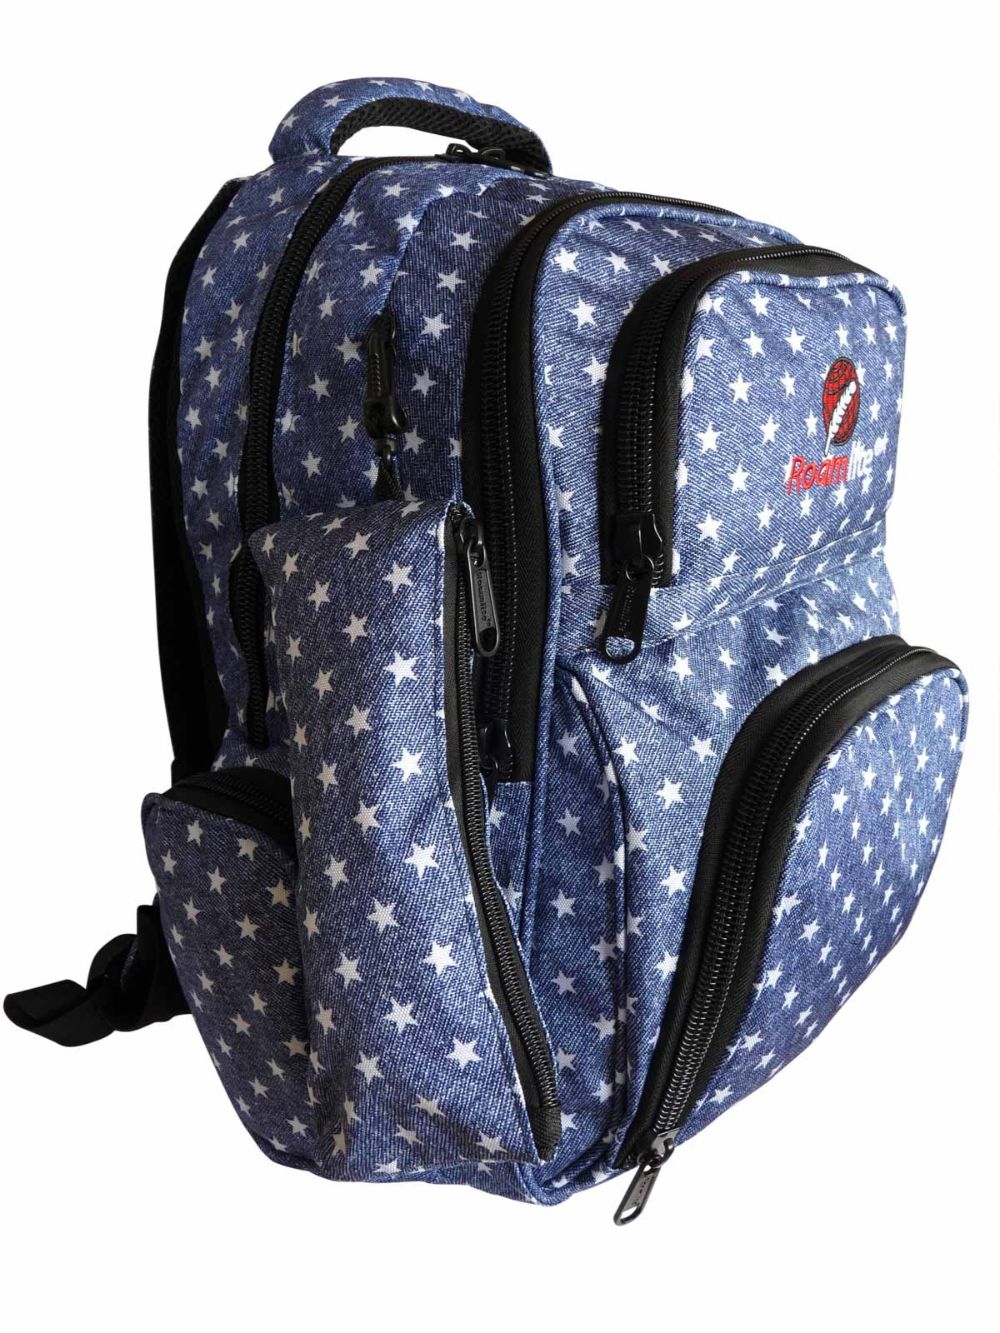 Roamlite Childrens Backpack Blue Star pattern RL840 side 2